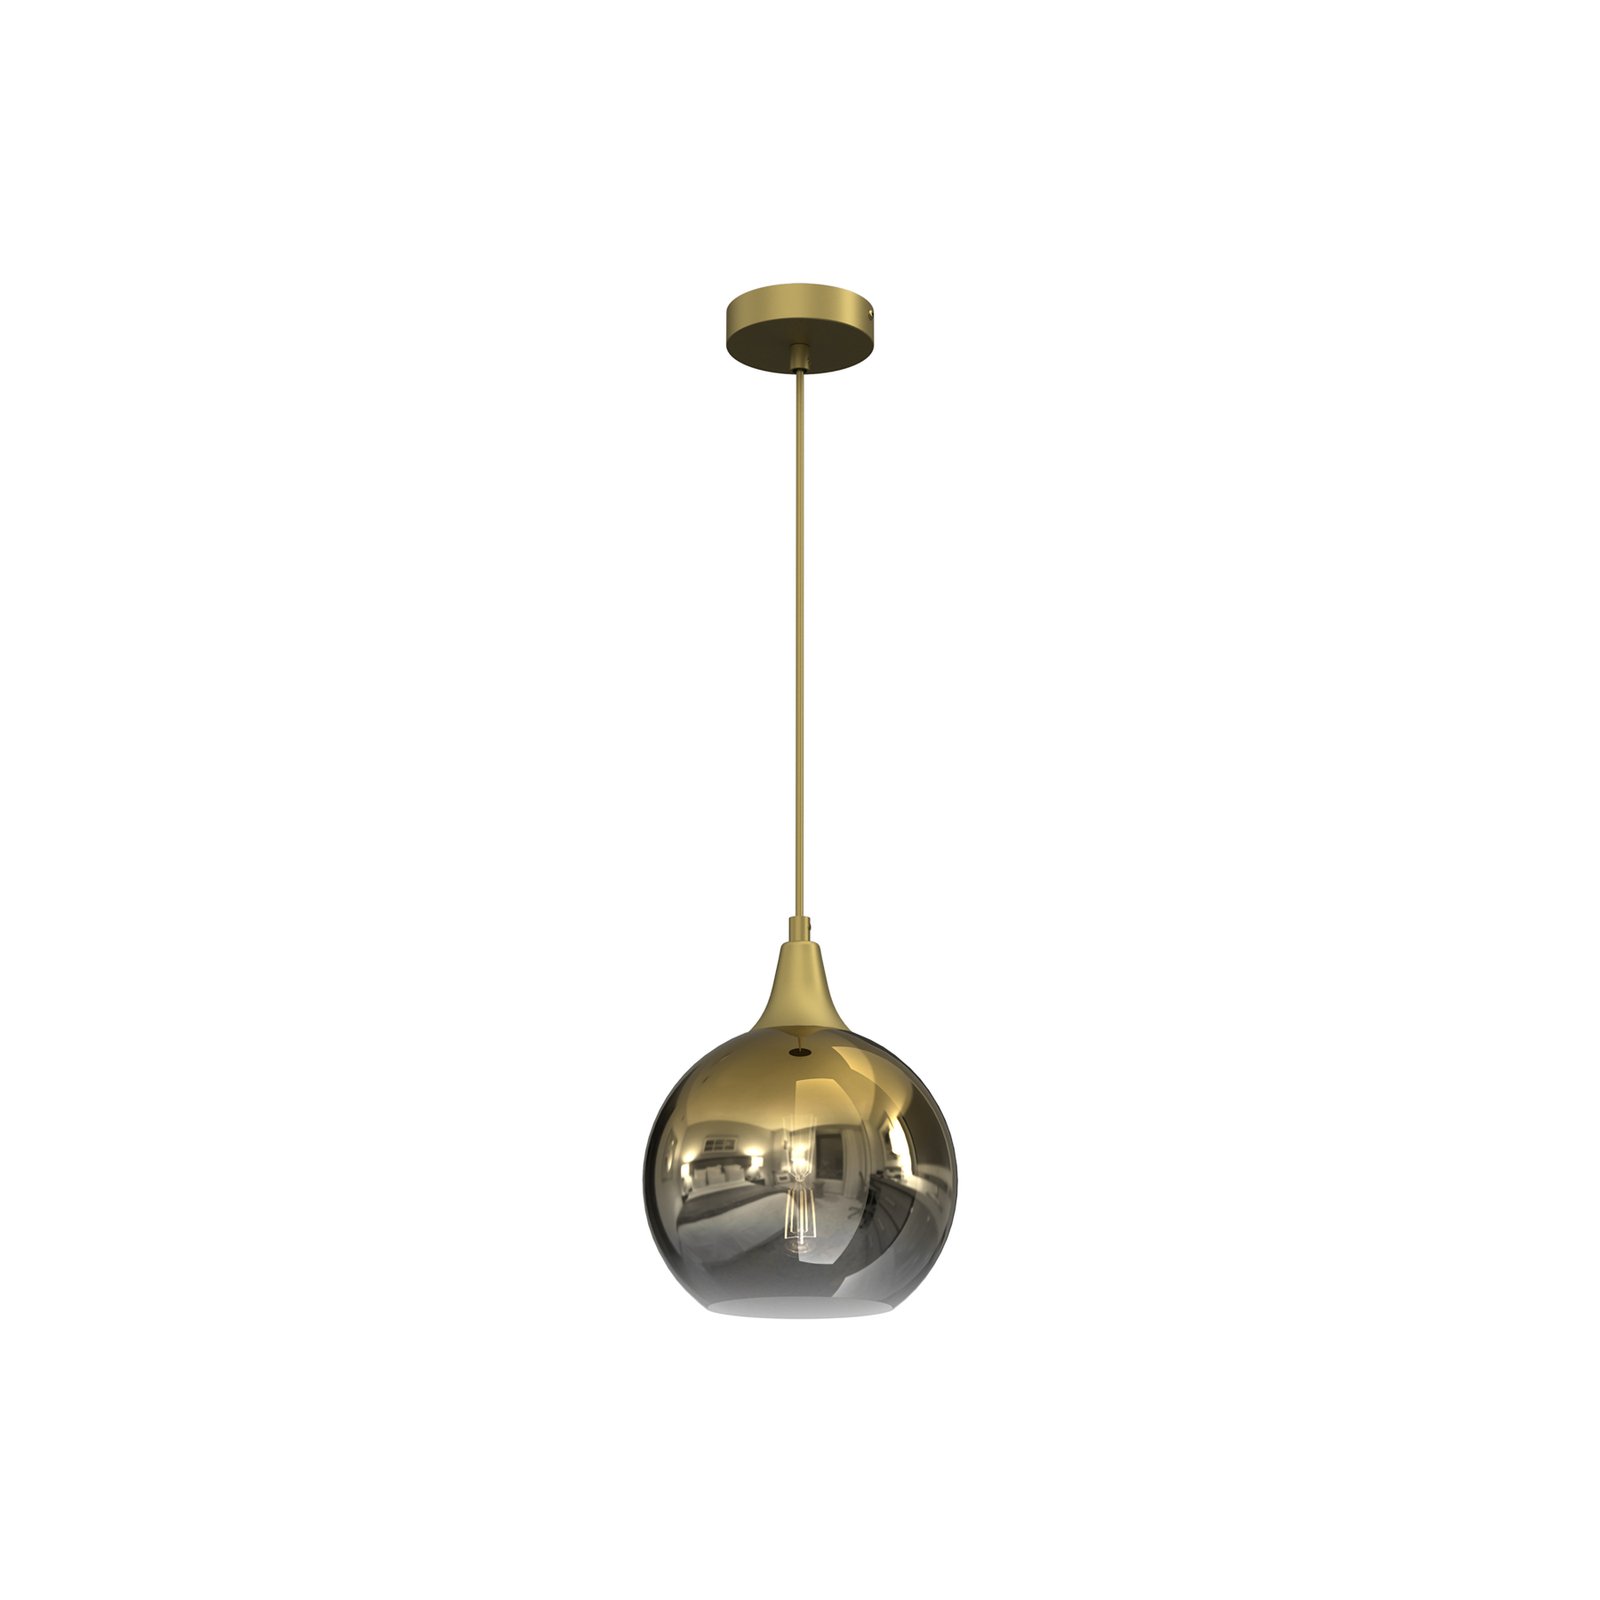 Hanglamp Monte van glas, 1-lamp, goud